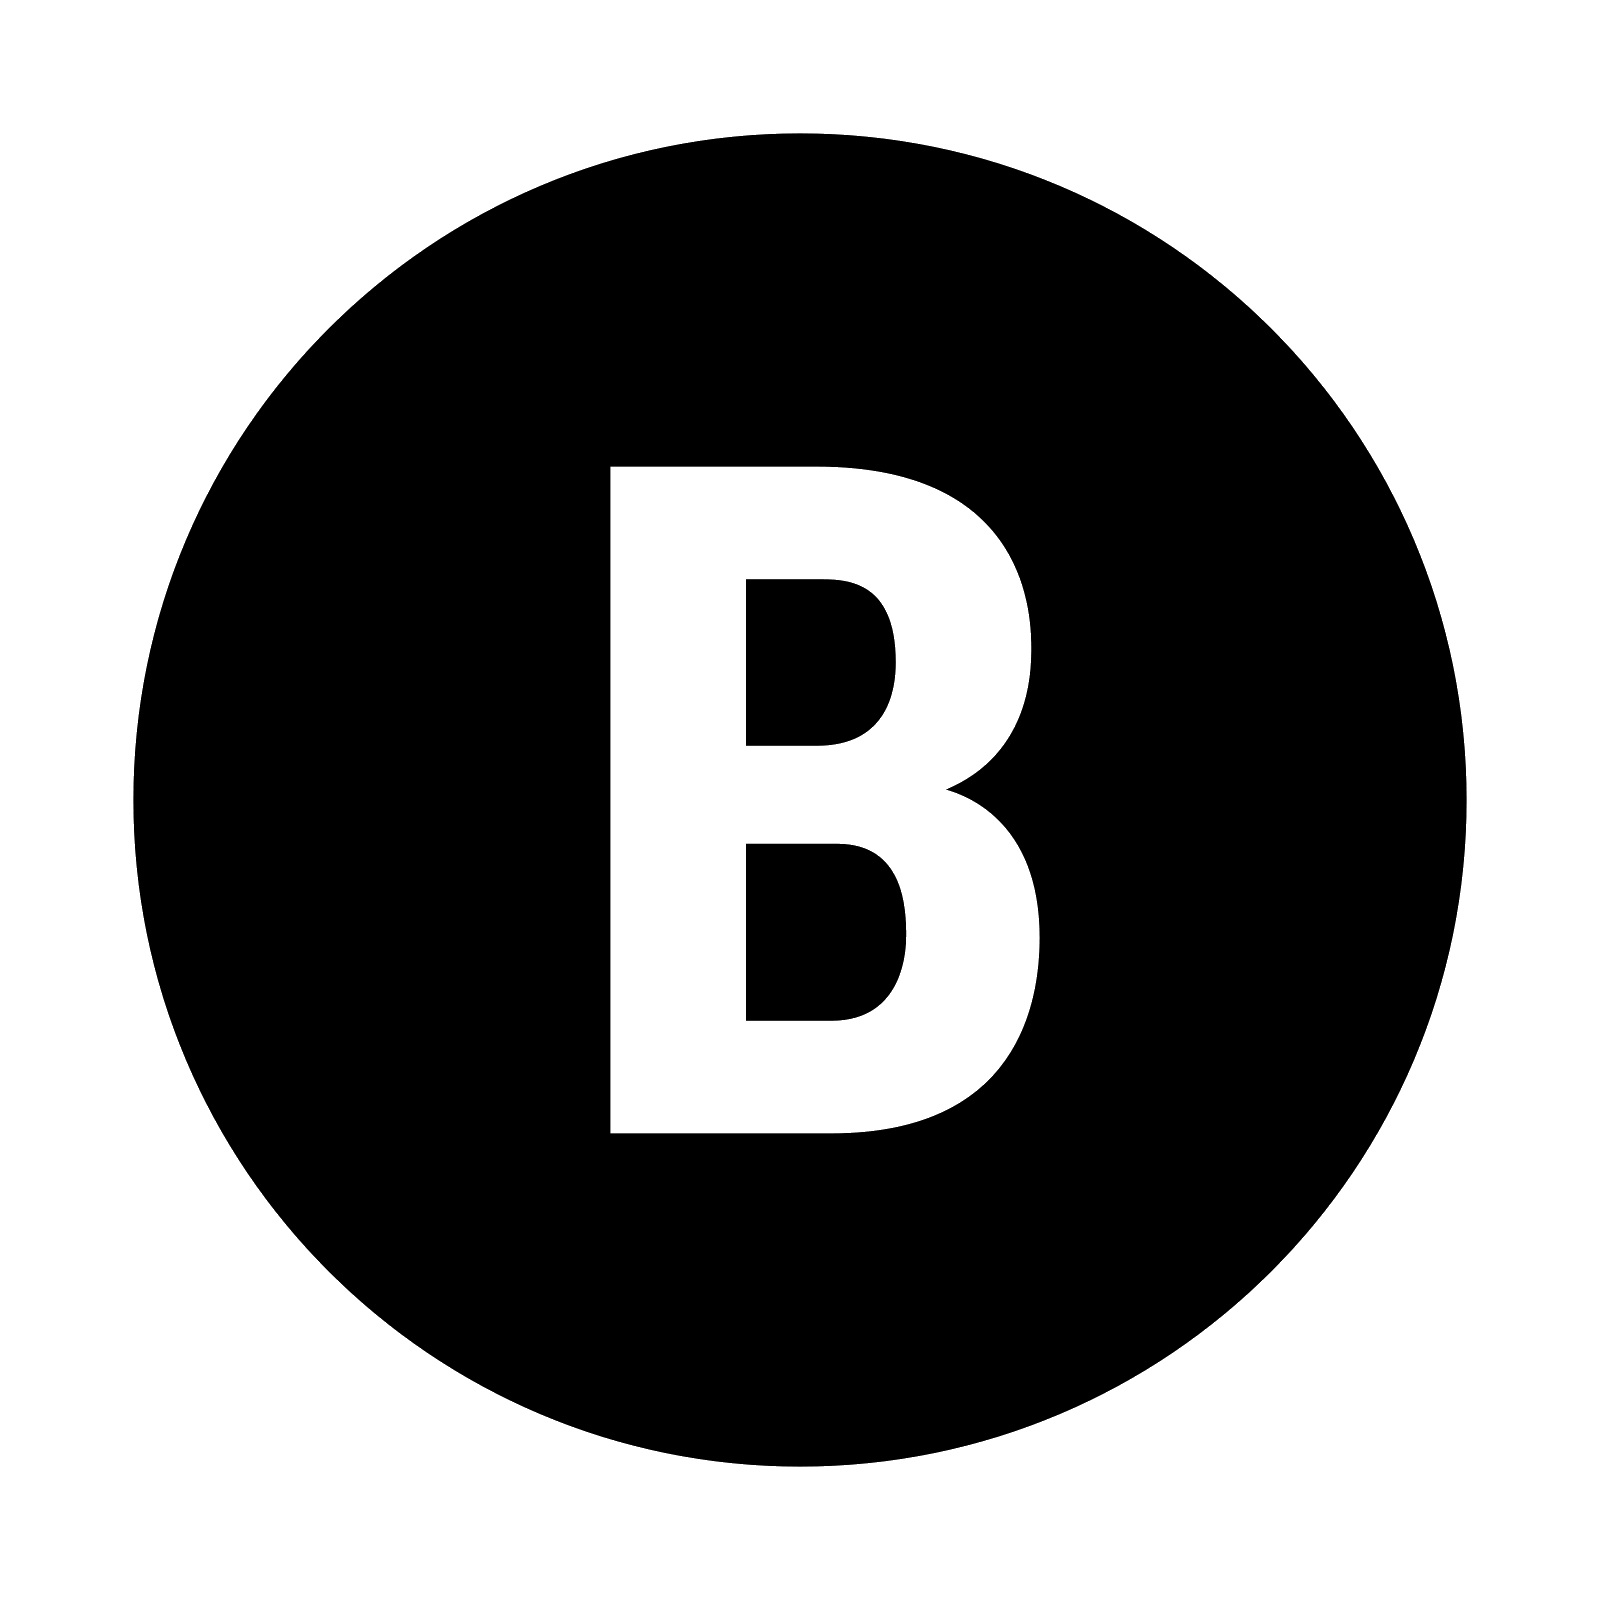 Black Letter B and Y Logo - Xbox B Icono gratuita, PNG y vector